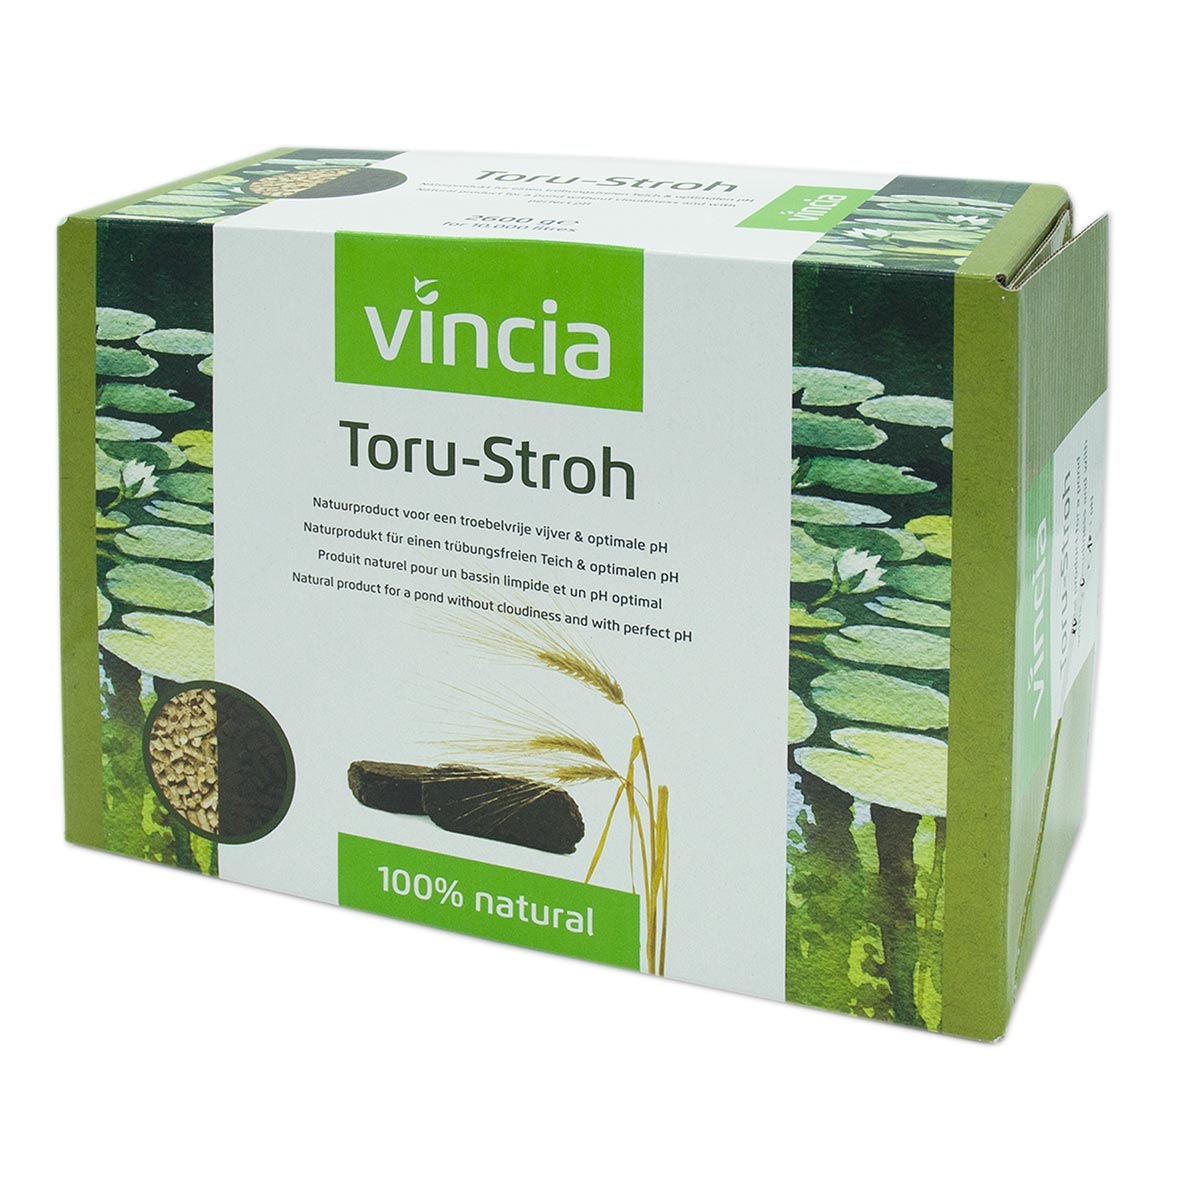 Velda Vincia Toru-Stroh 2600 g von Velda